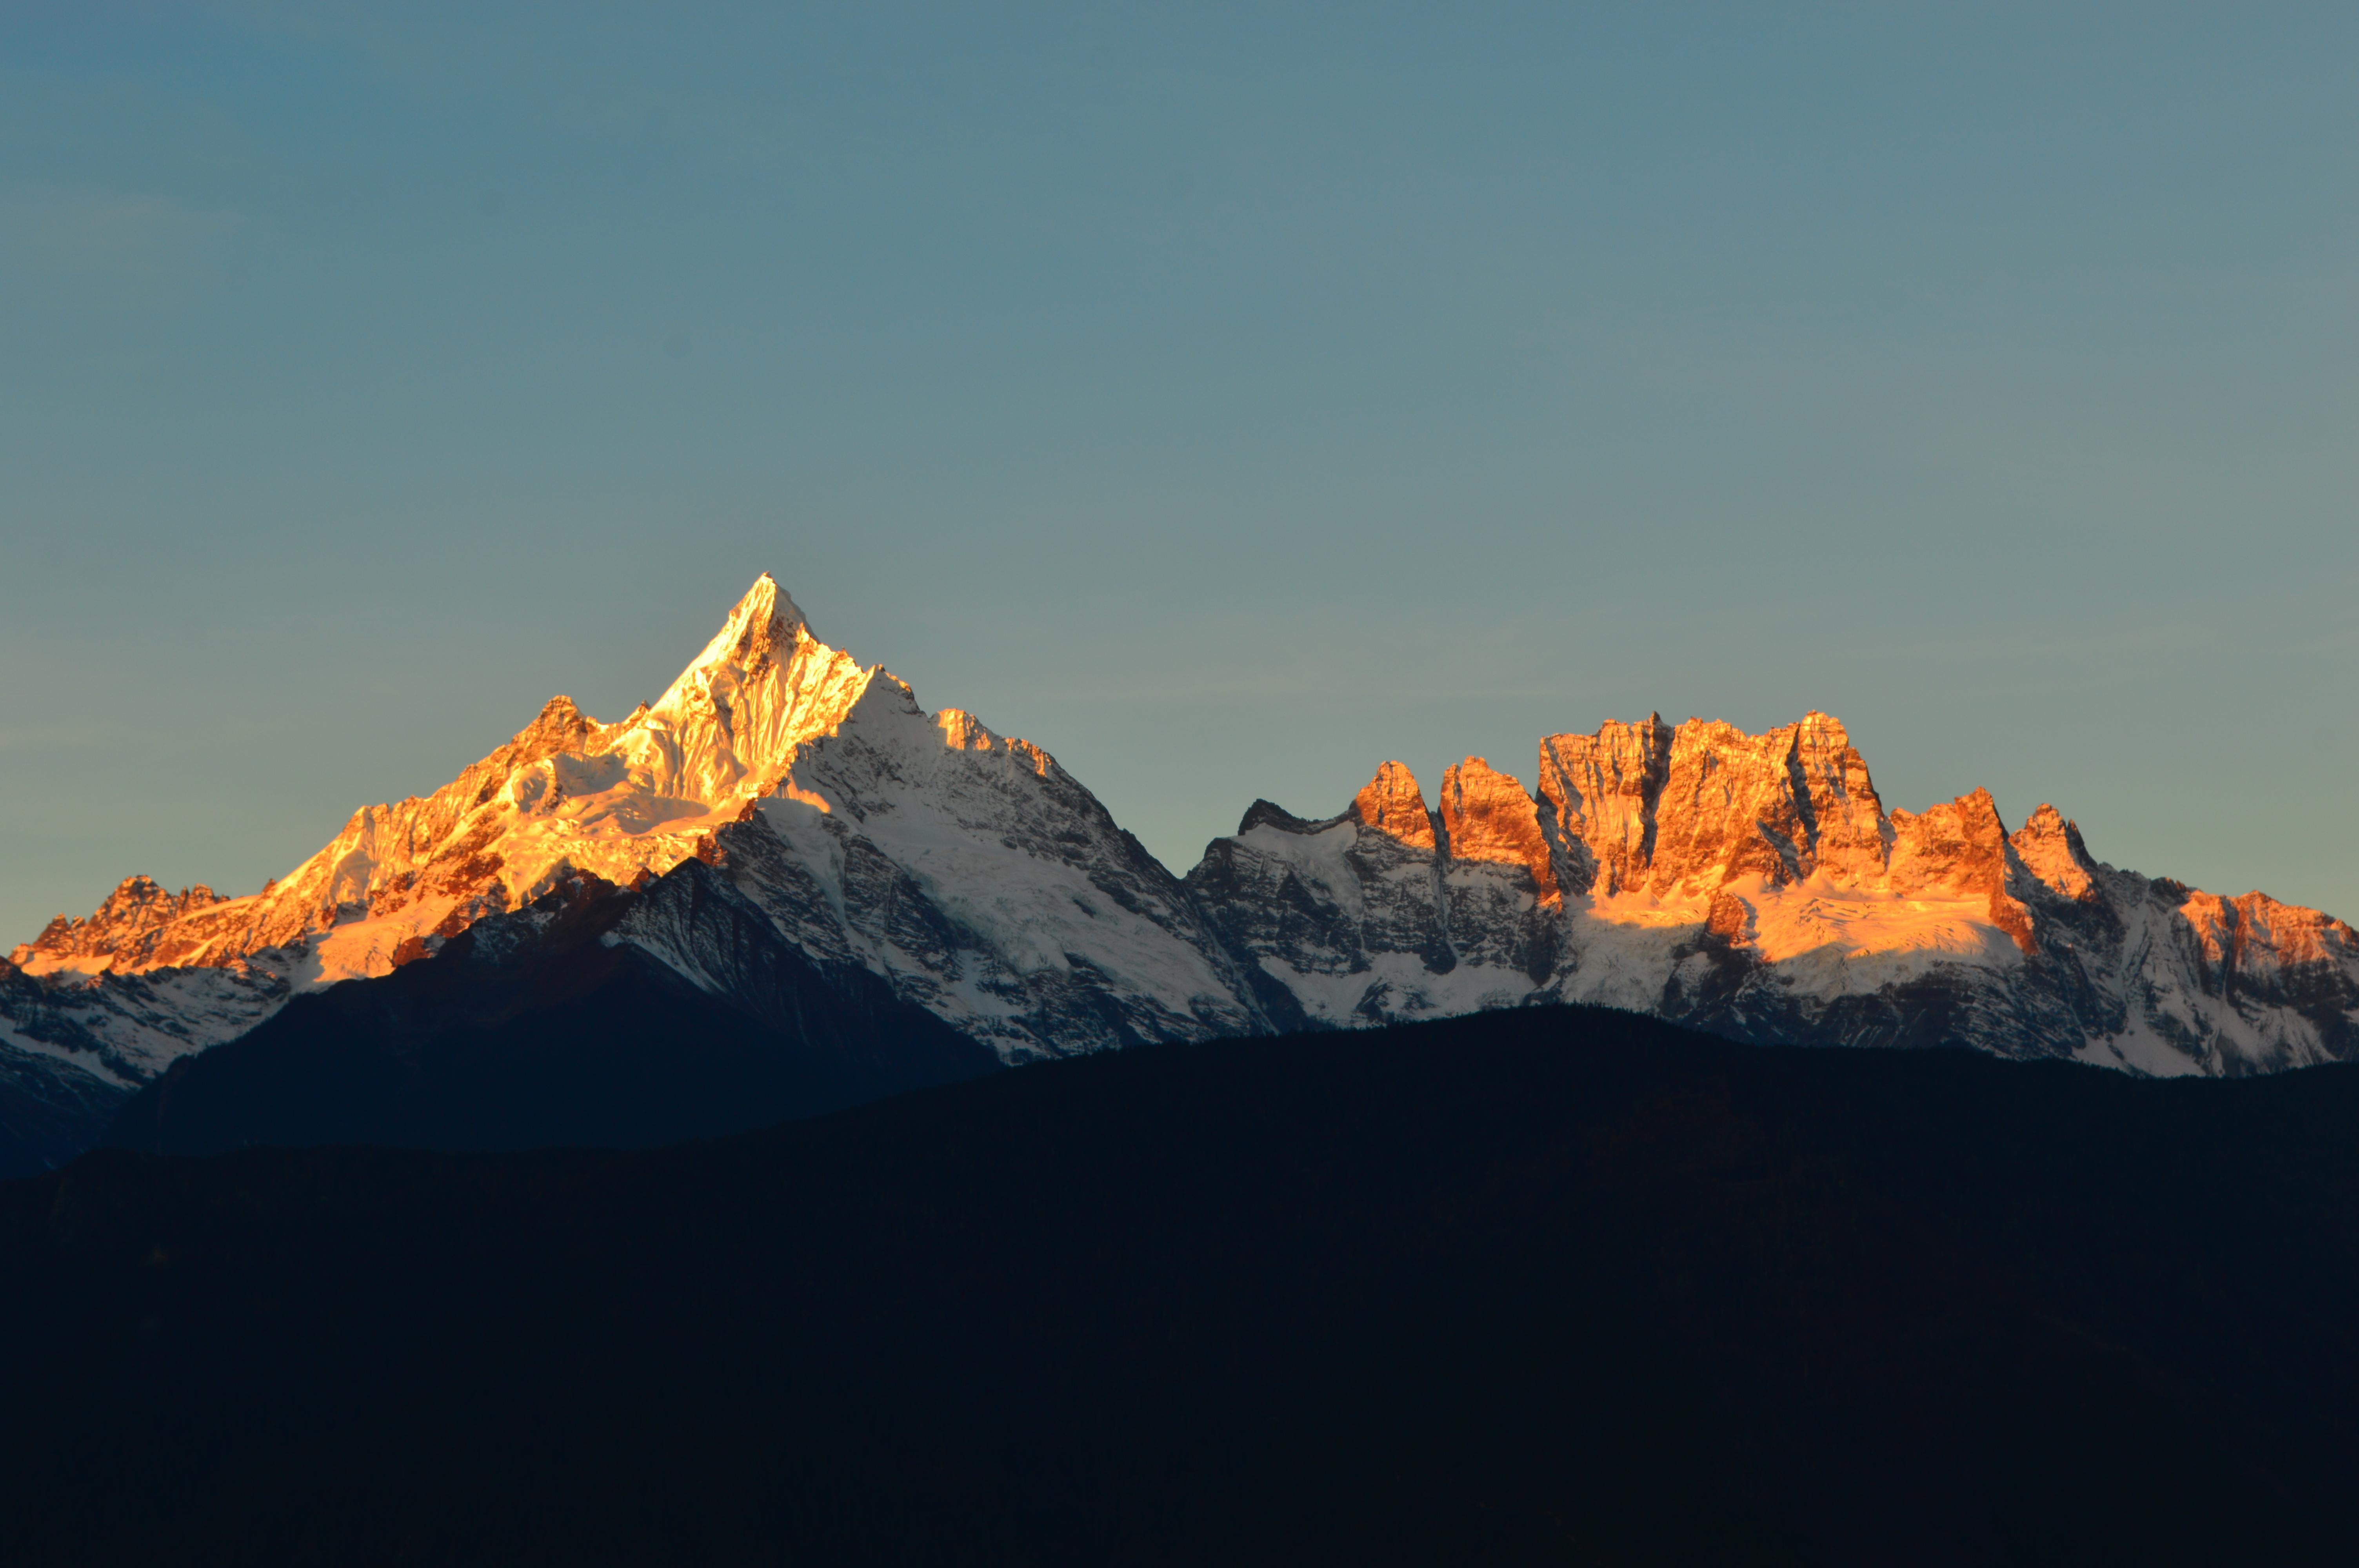 国外的亲戚说瑞士的山比中国的五岳更好看该怎么反驳